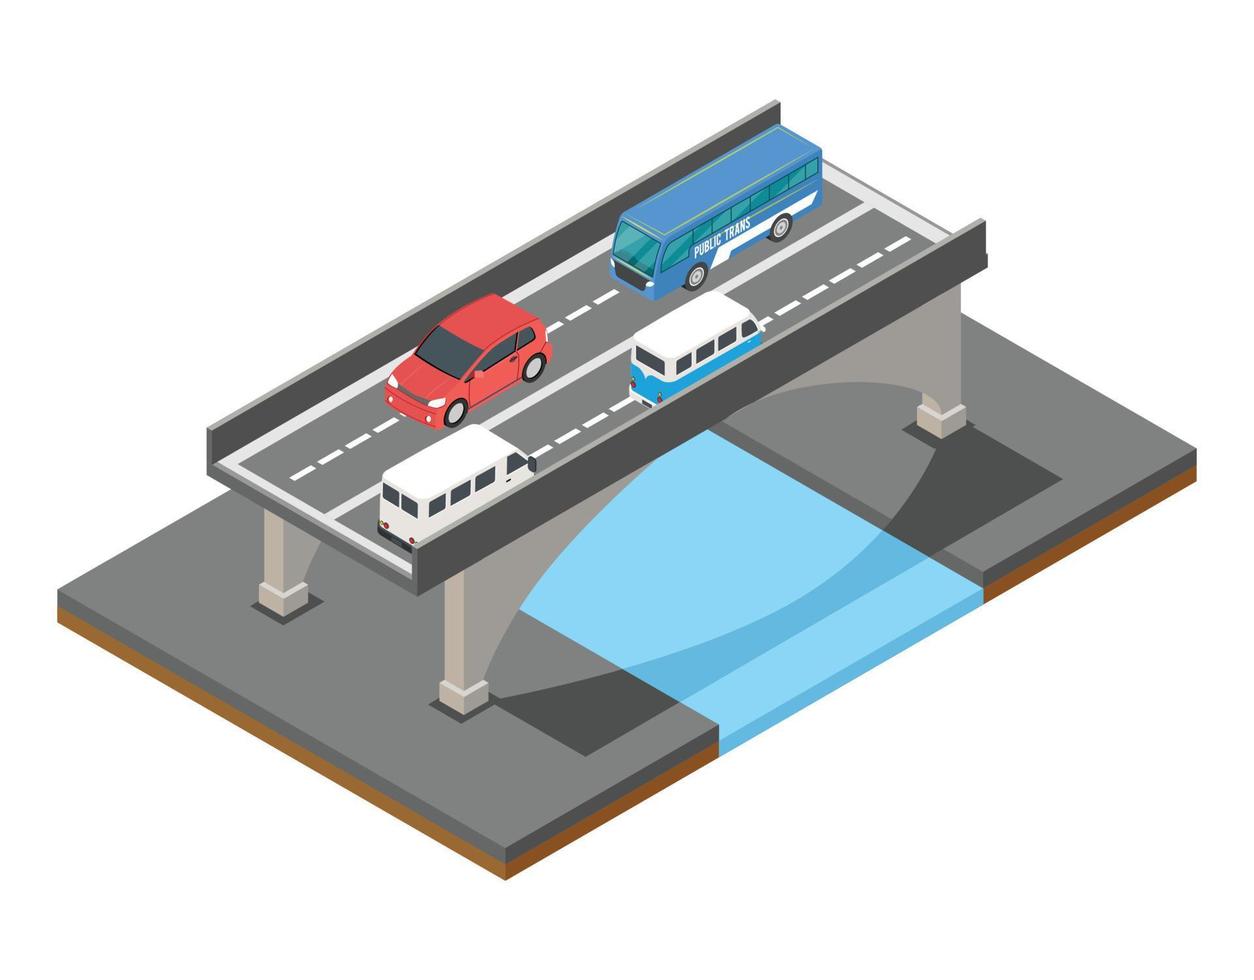 ilustração isométrica do conceito de tráfego de ponte, ilustração vetorial adequada para diagramas, infográficos e outros ativos gráficos vetor